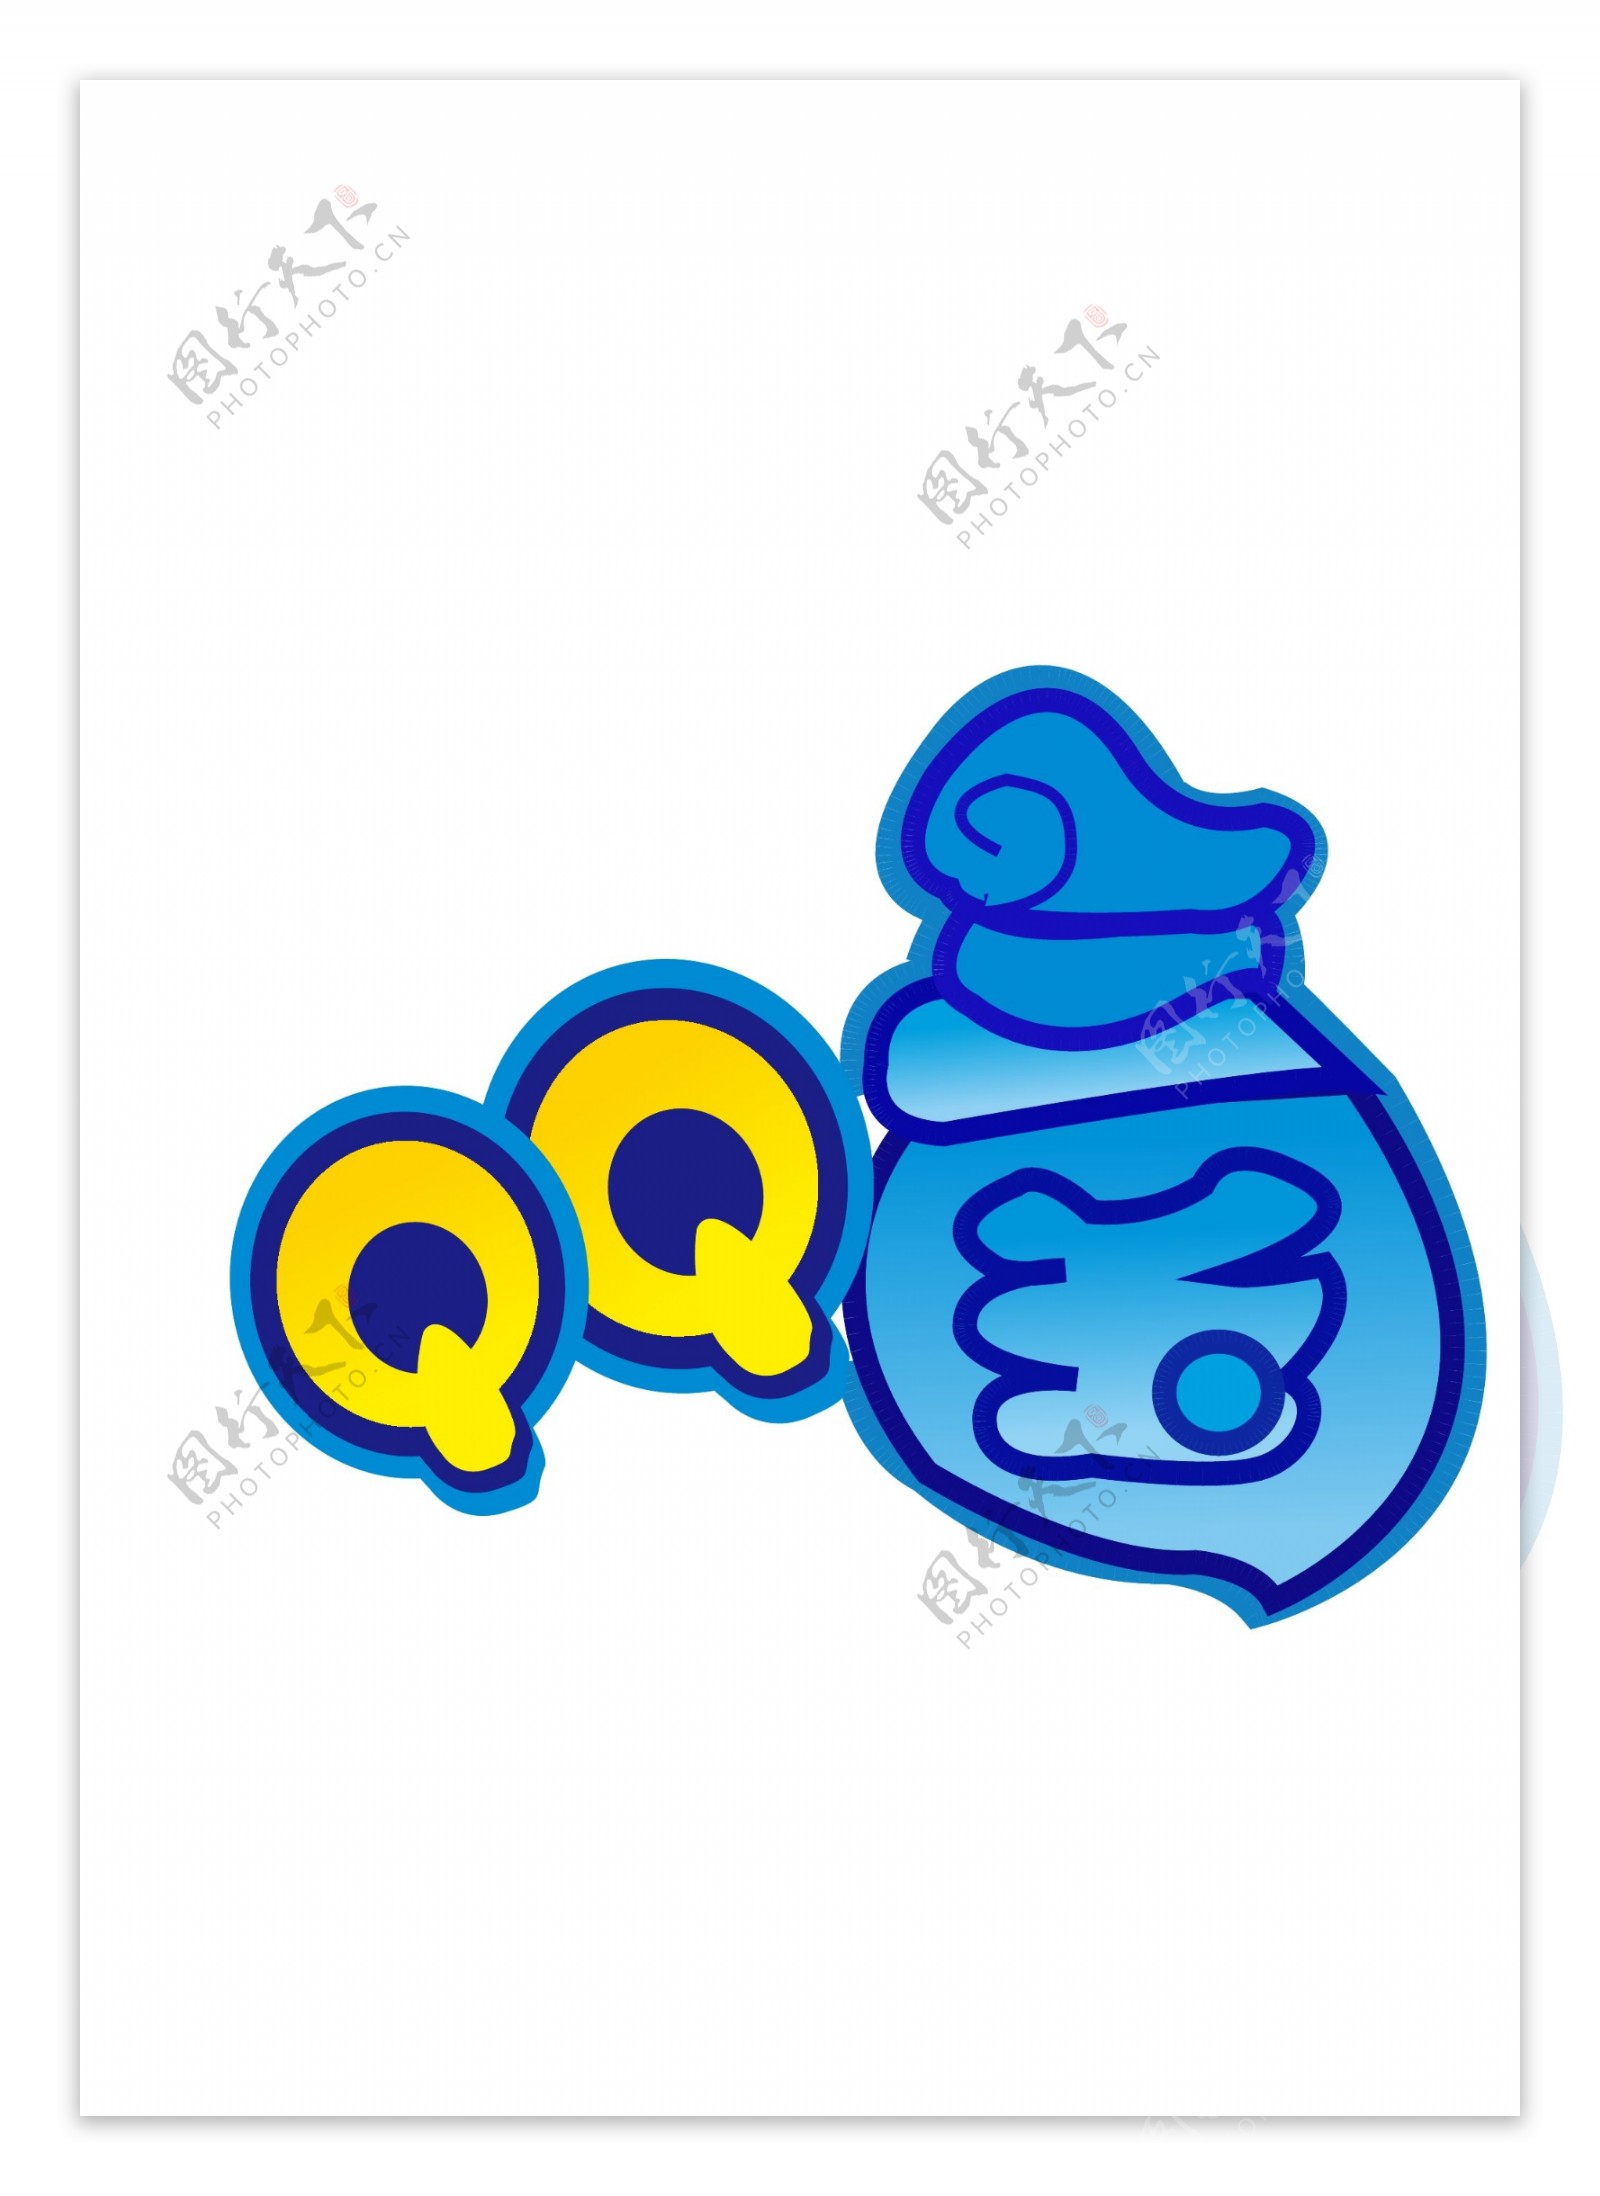 QQ三国游戏标志设计